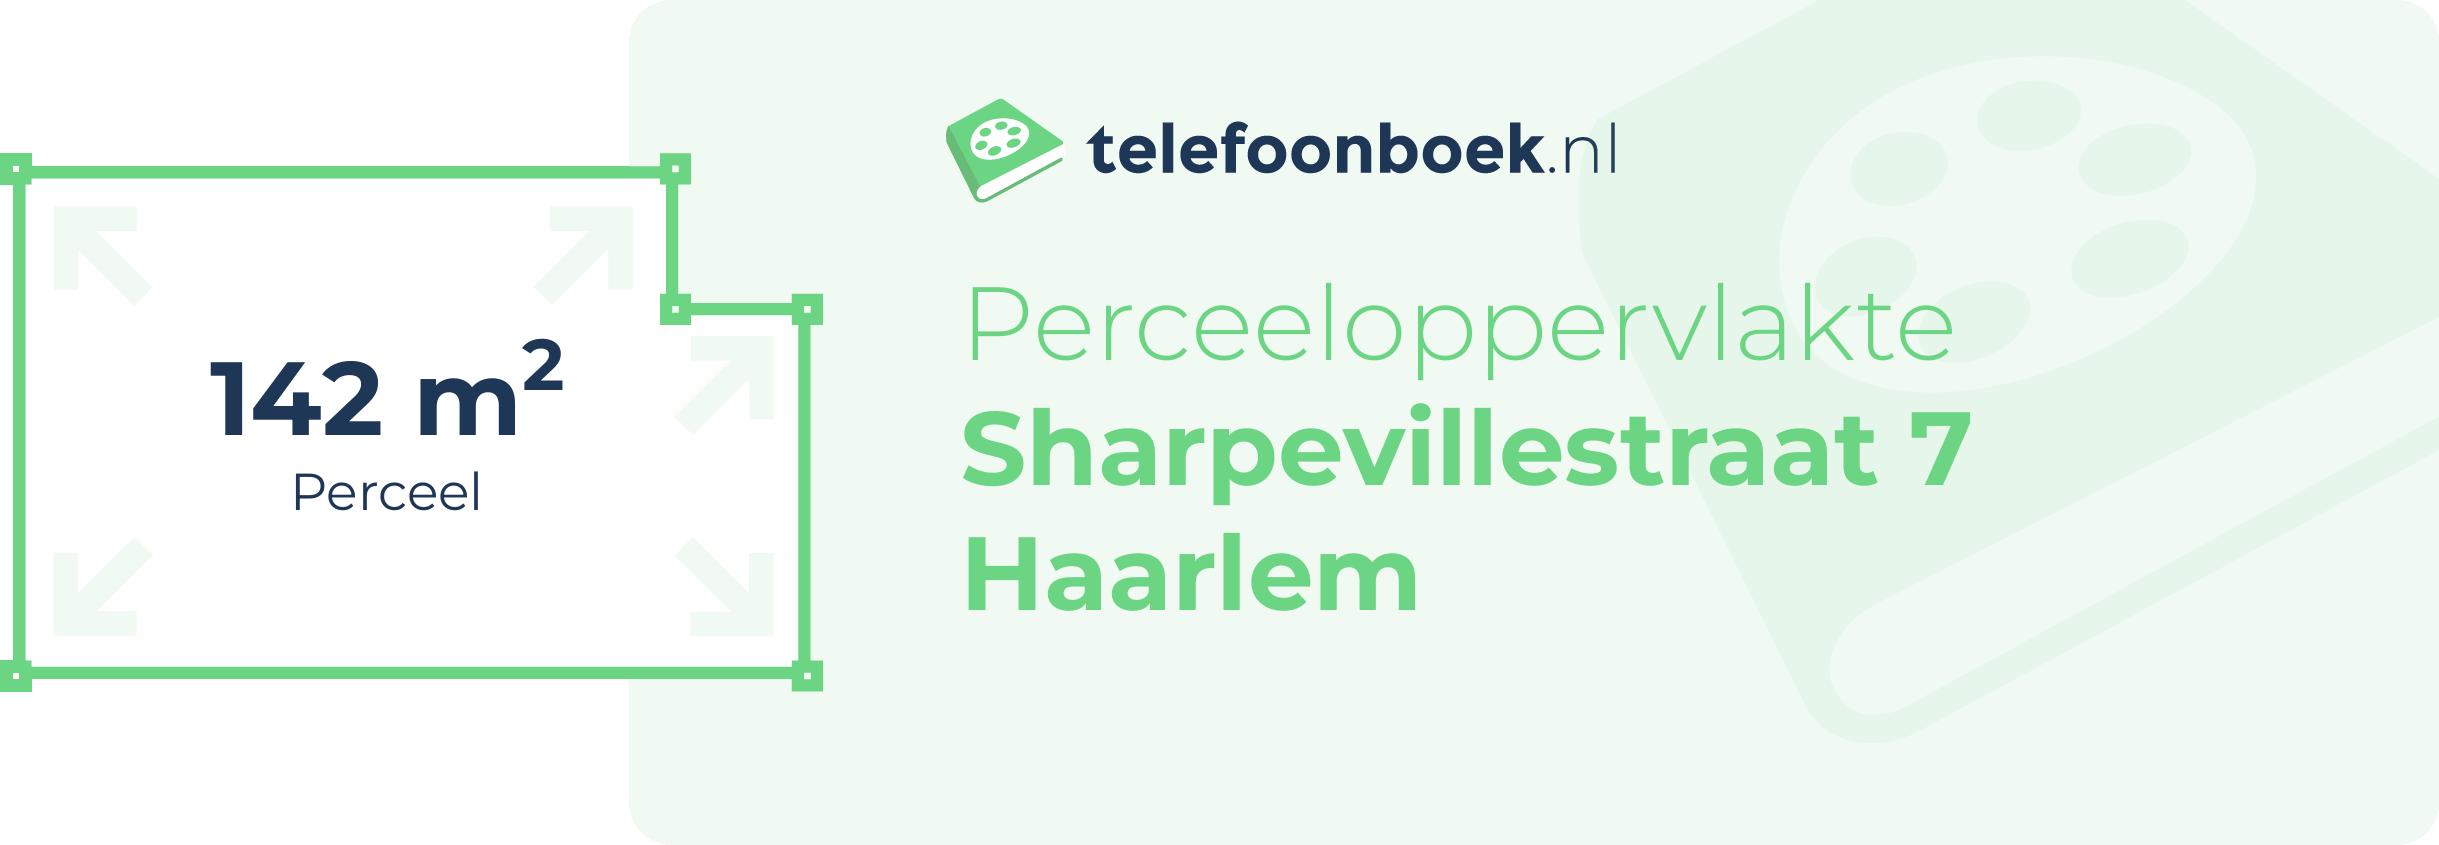 Perceeloppervlakte Sharpevillestraat 7 Haarlem